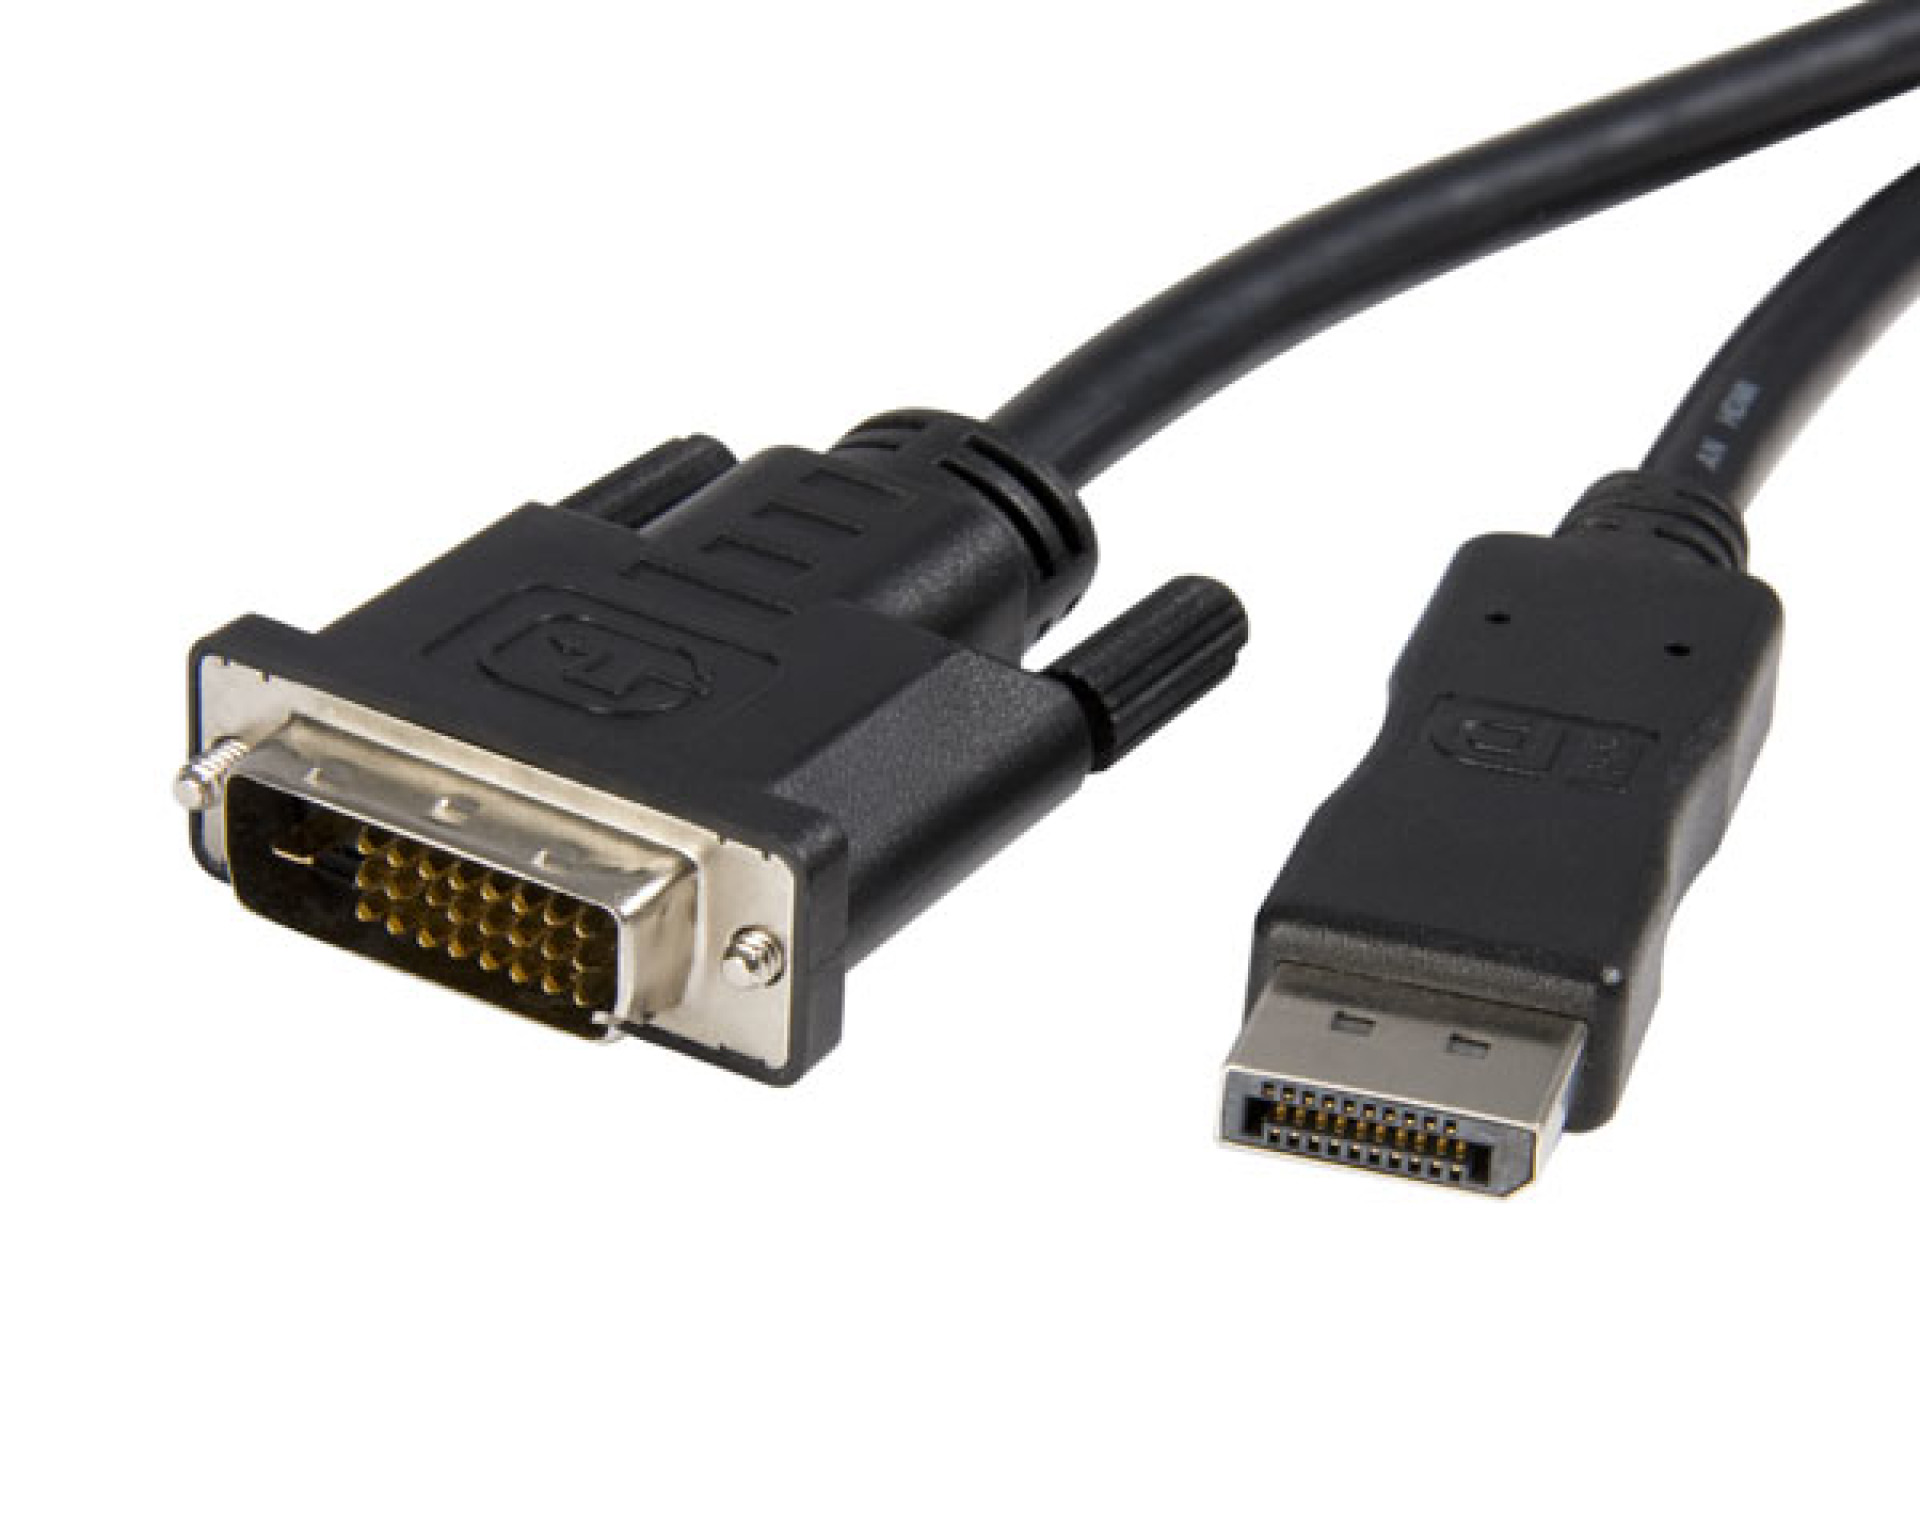 Konverterkabel DisplayPort 1.2 auf DVI, schwarz, 3 m